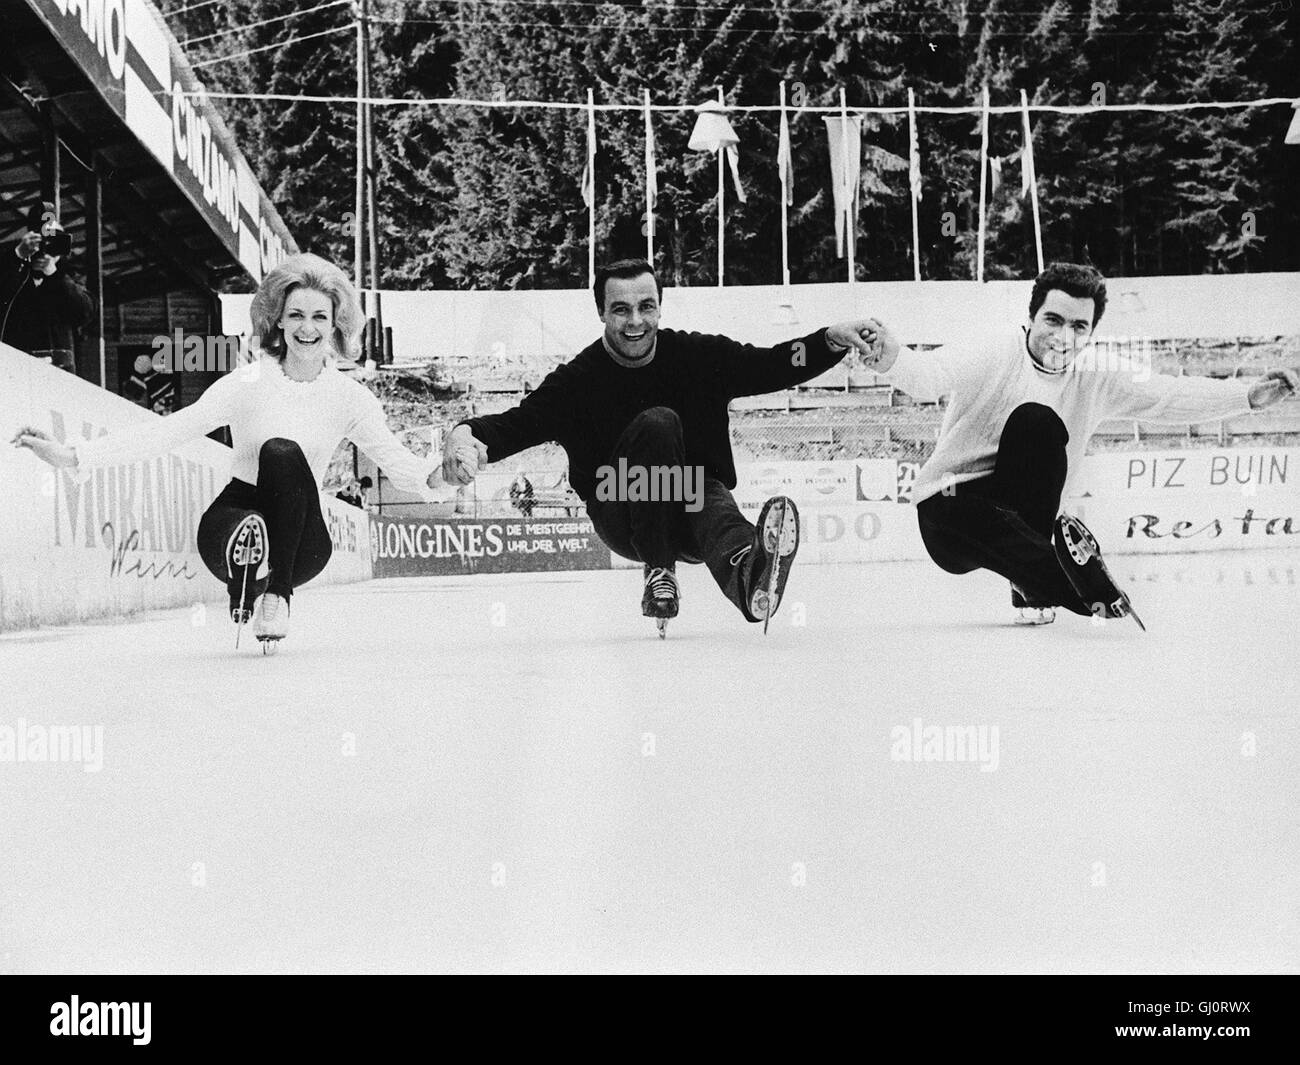 DAS GROSSE GLÜCK-5 Die Eiskunstlauf-Weltmeisterin Marika Kilius beendet  nach ihrer Heirat ihre sportliche Karriere, worauf ihr Ex-Partner  Hans-Jürgen Bäumler sich und der Welt beweisen will, dass er mehr kann als  nur Schlittschuhlaufen.